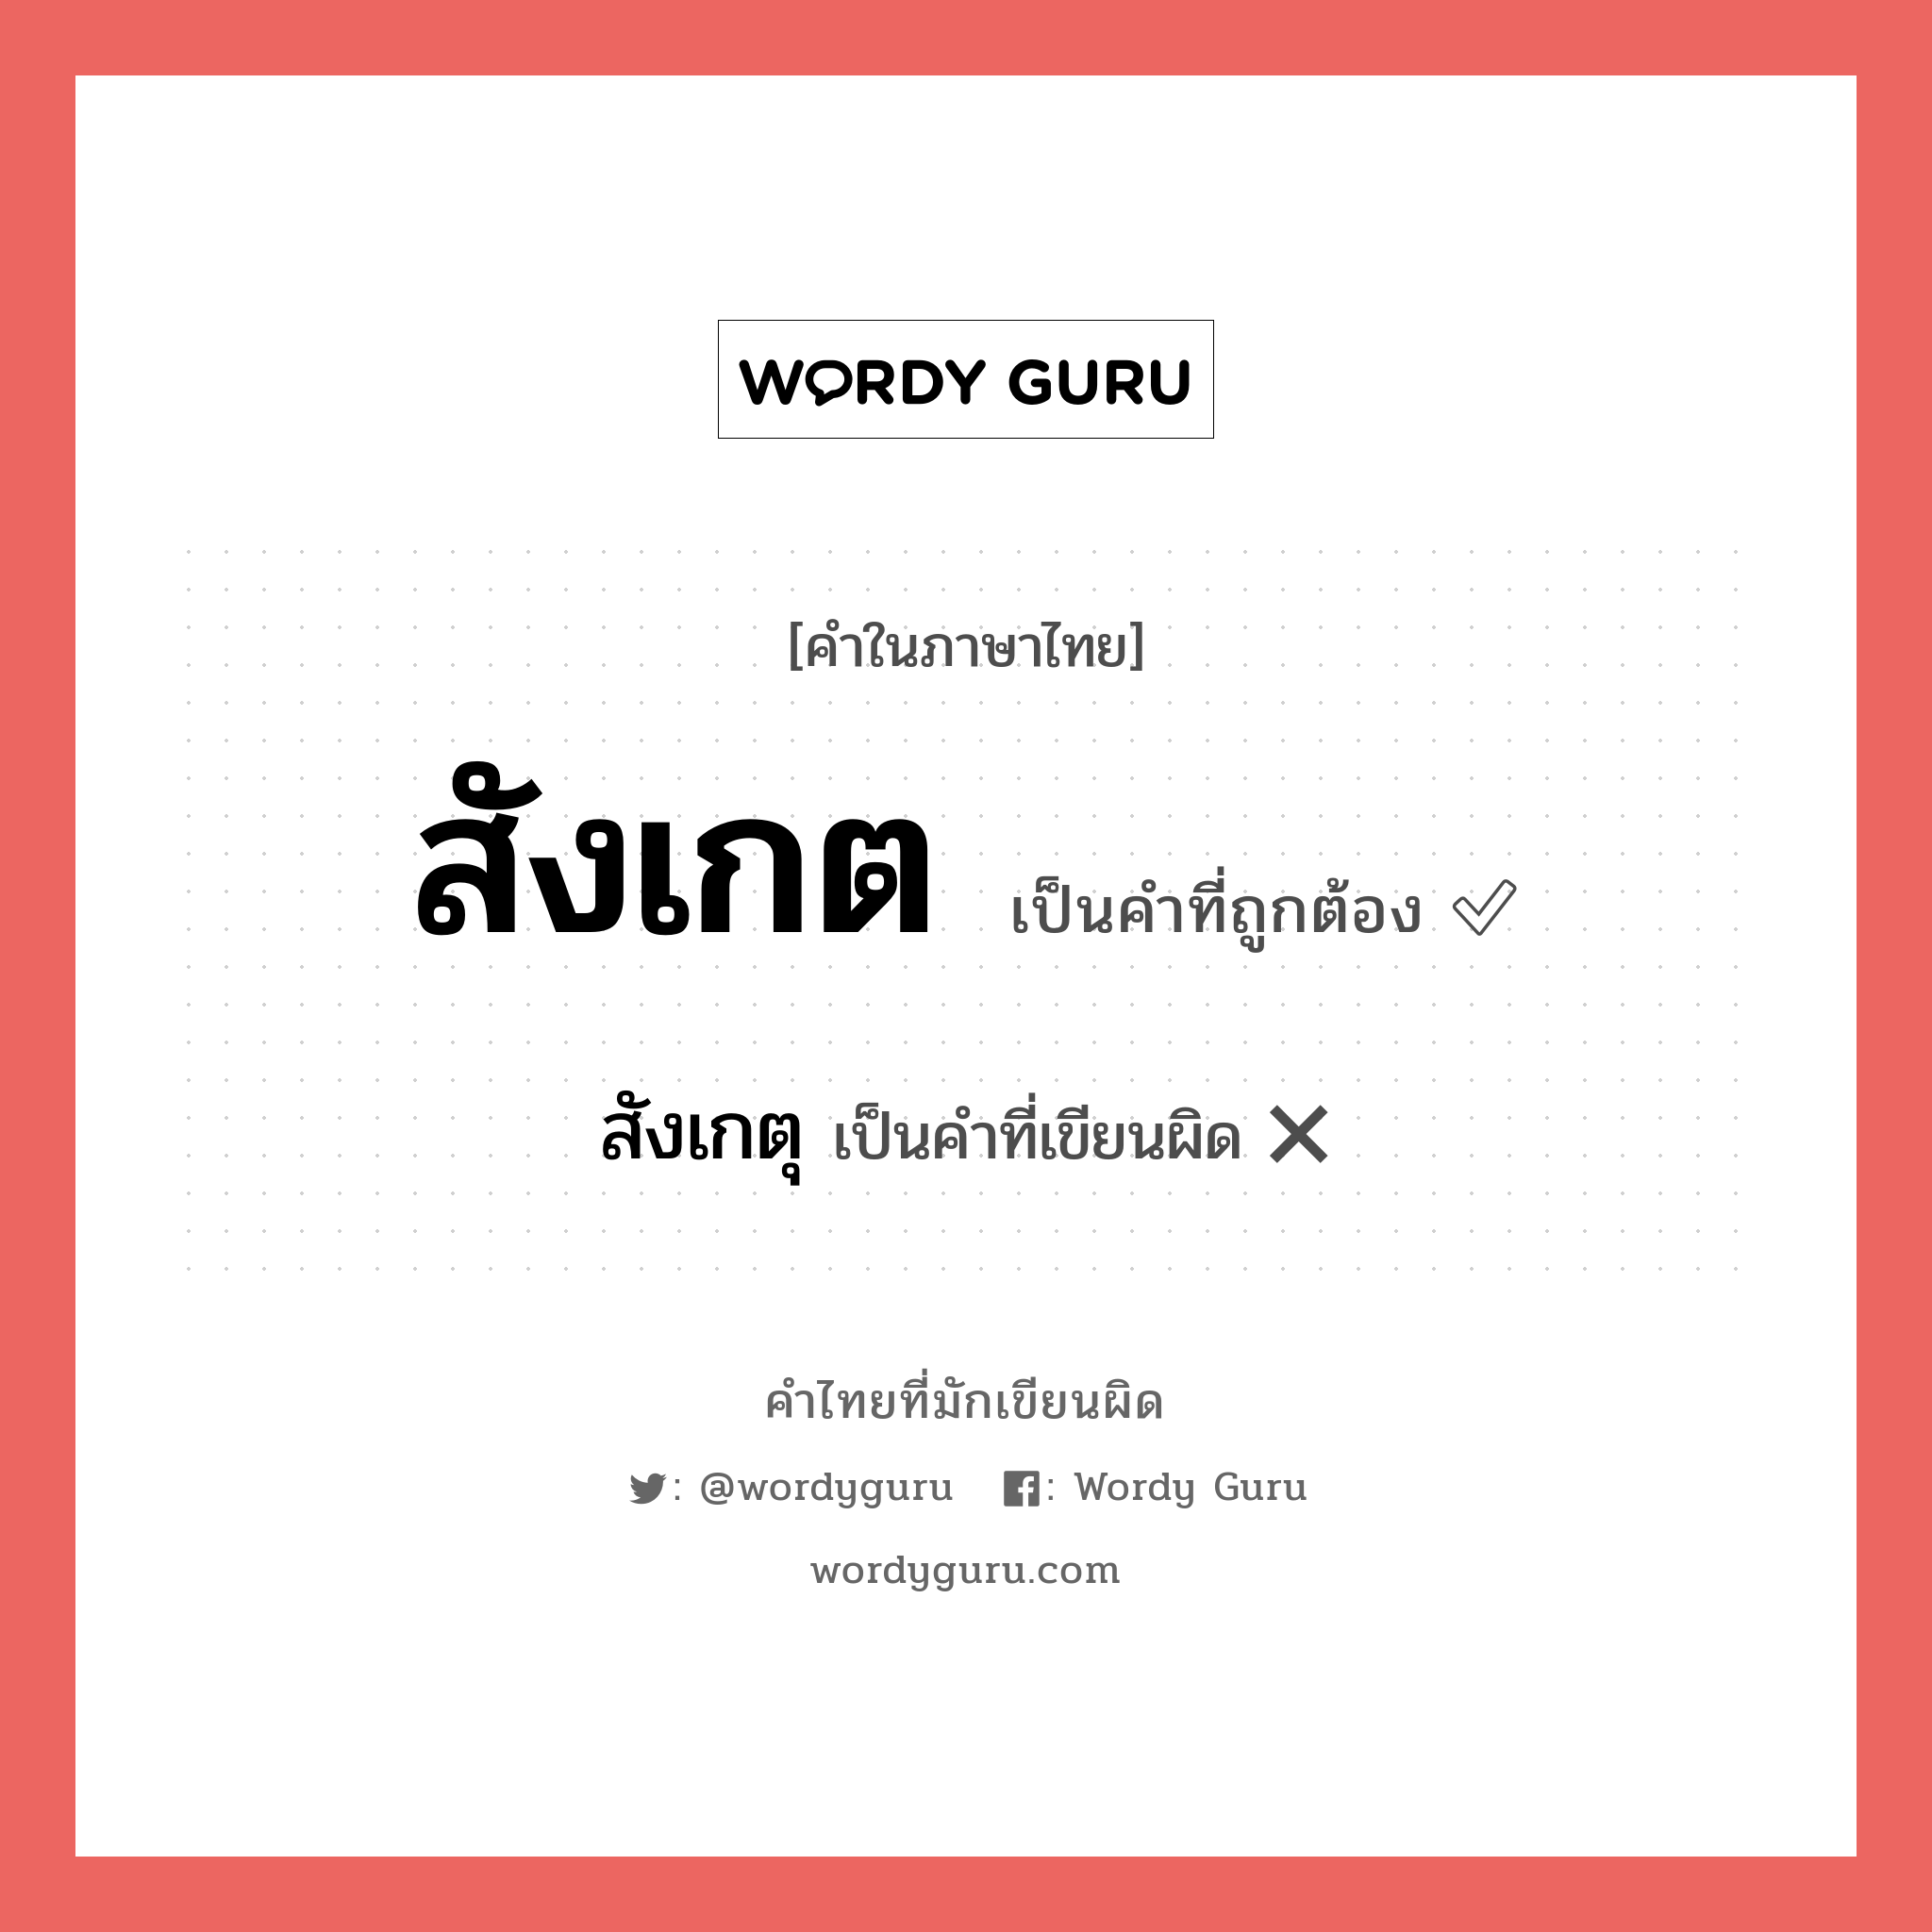 "สังเกต" กับ "สังเกตุ" เขียนอย่างไร คำไหนที่ถูกต้อง - คำไทยที่มักเขียนผิด